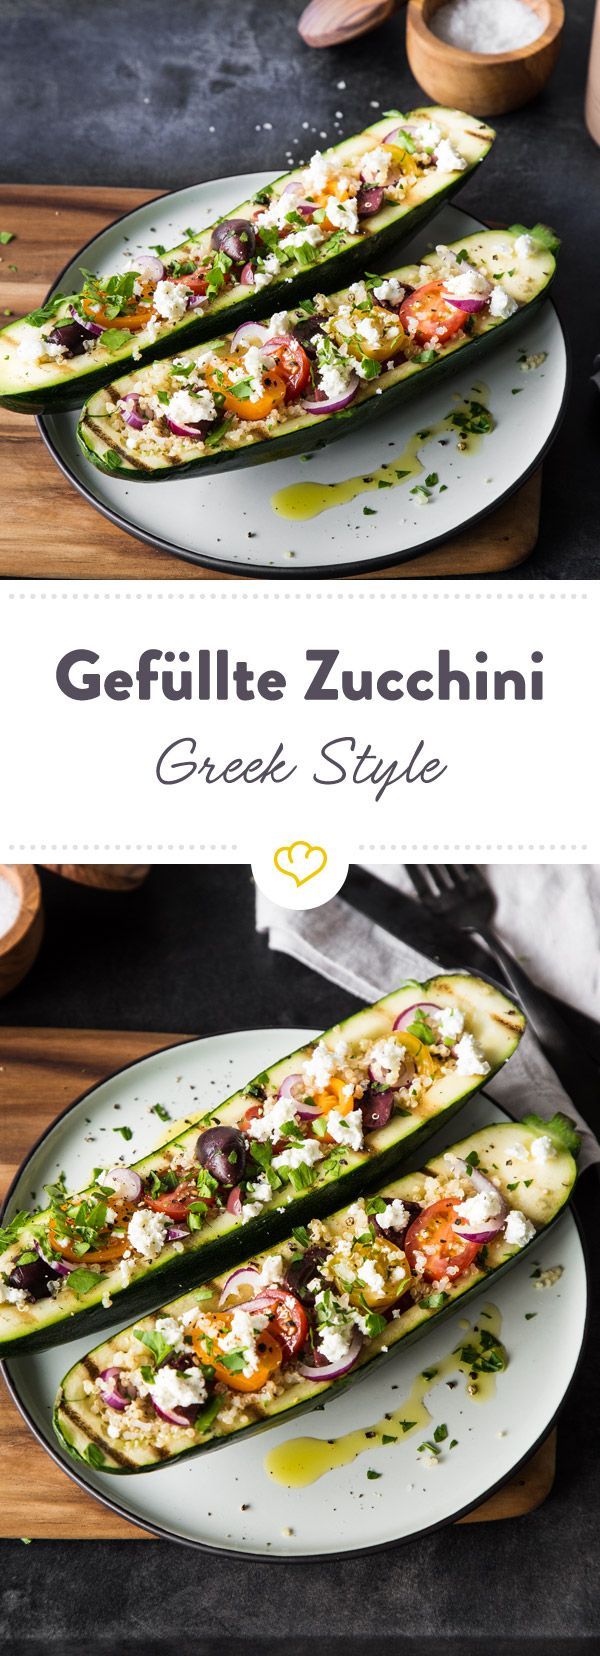 Gef?llte Zucchini mit Quinoa – Greek Style -   25 fitness rezepte fleisch
 ideas